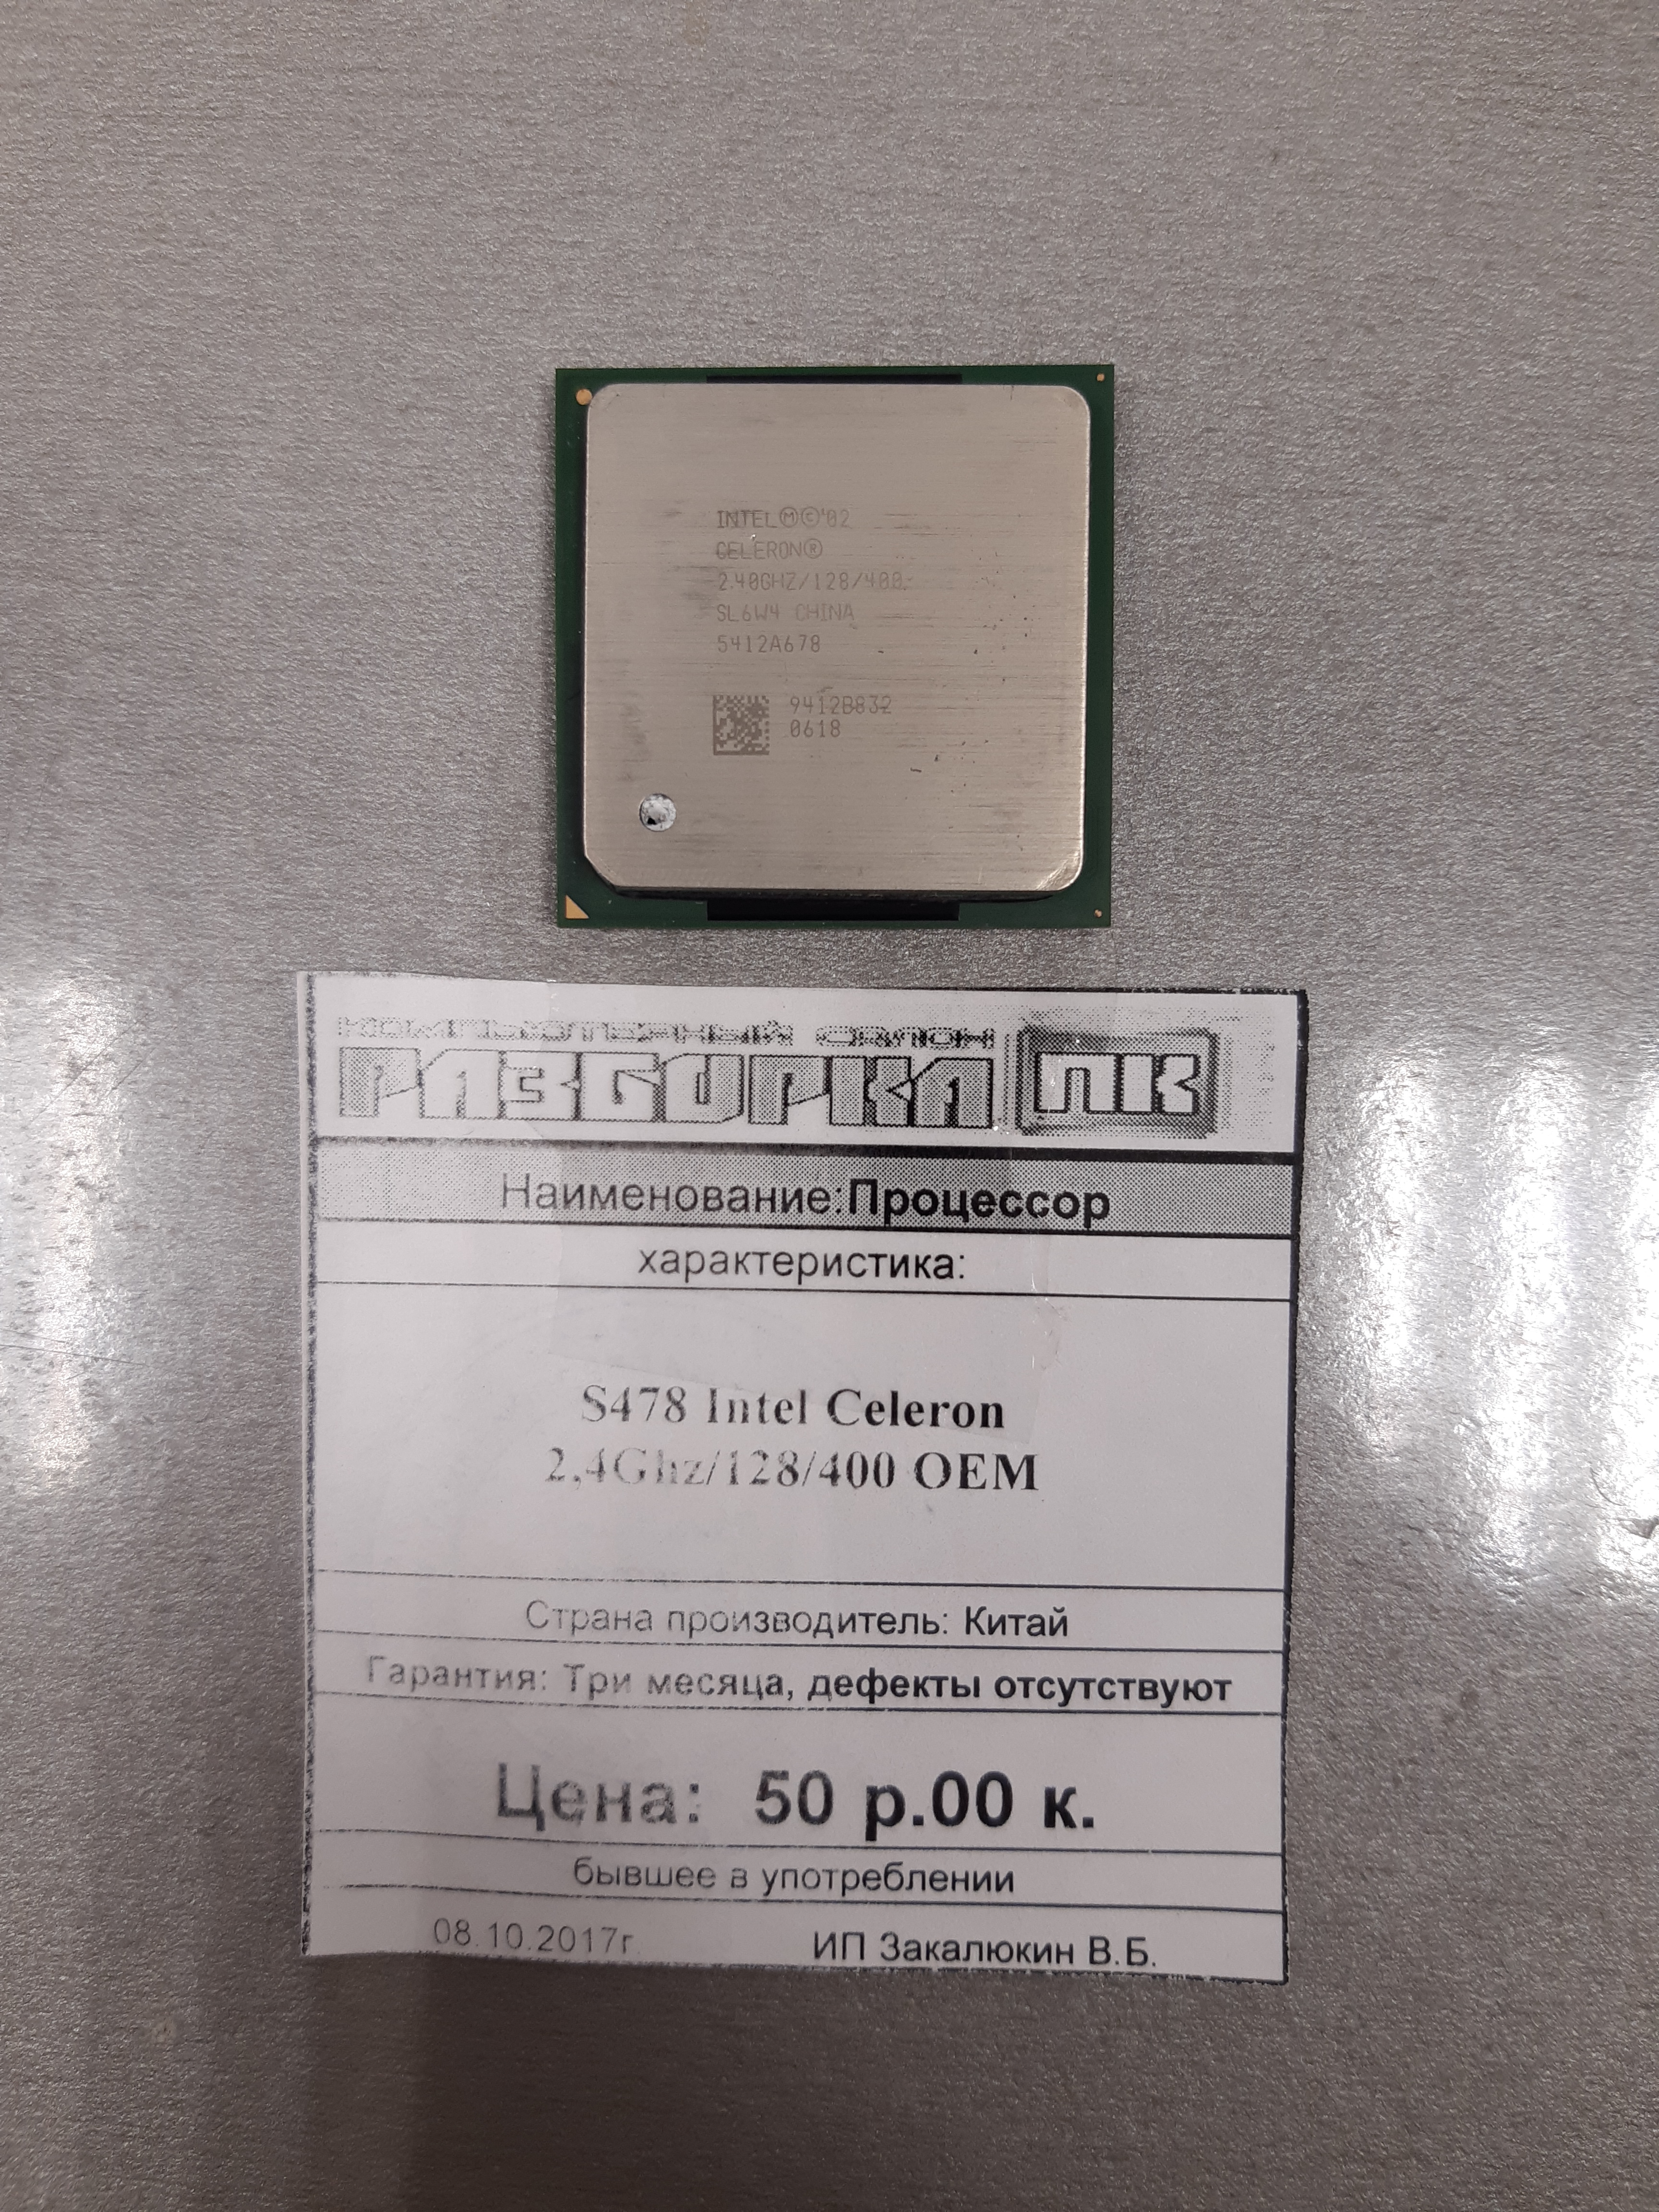 Процессор S478 Intel Celeron 2,4Ghz/128/400 OEM